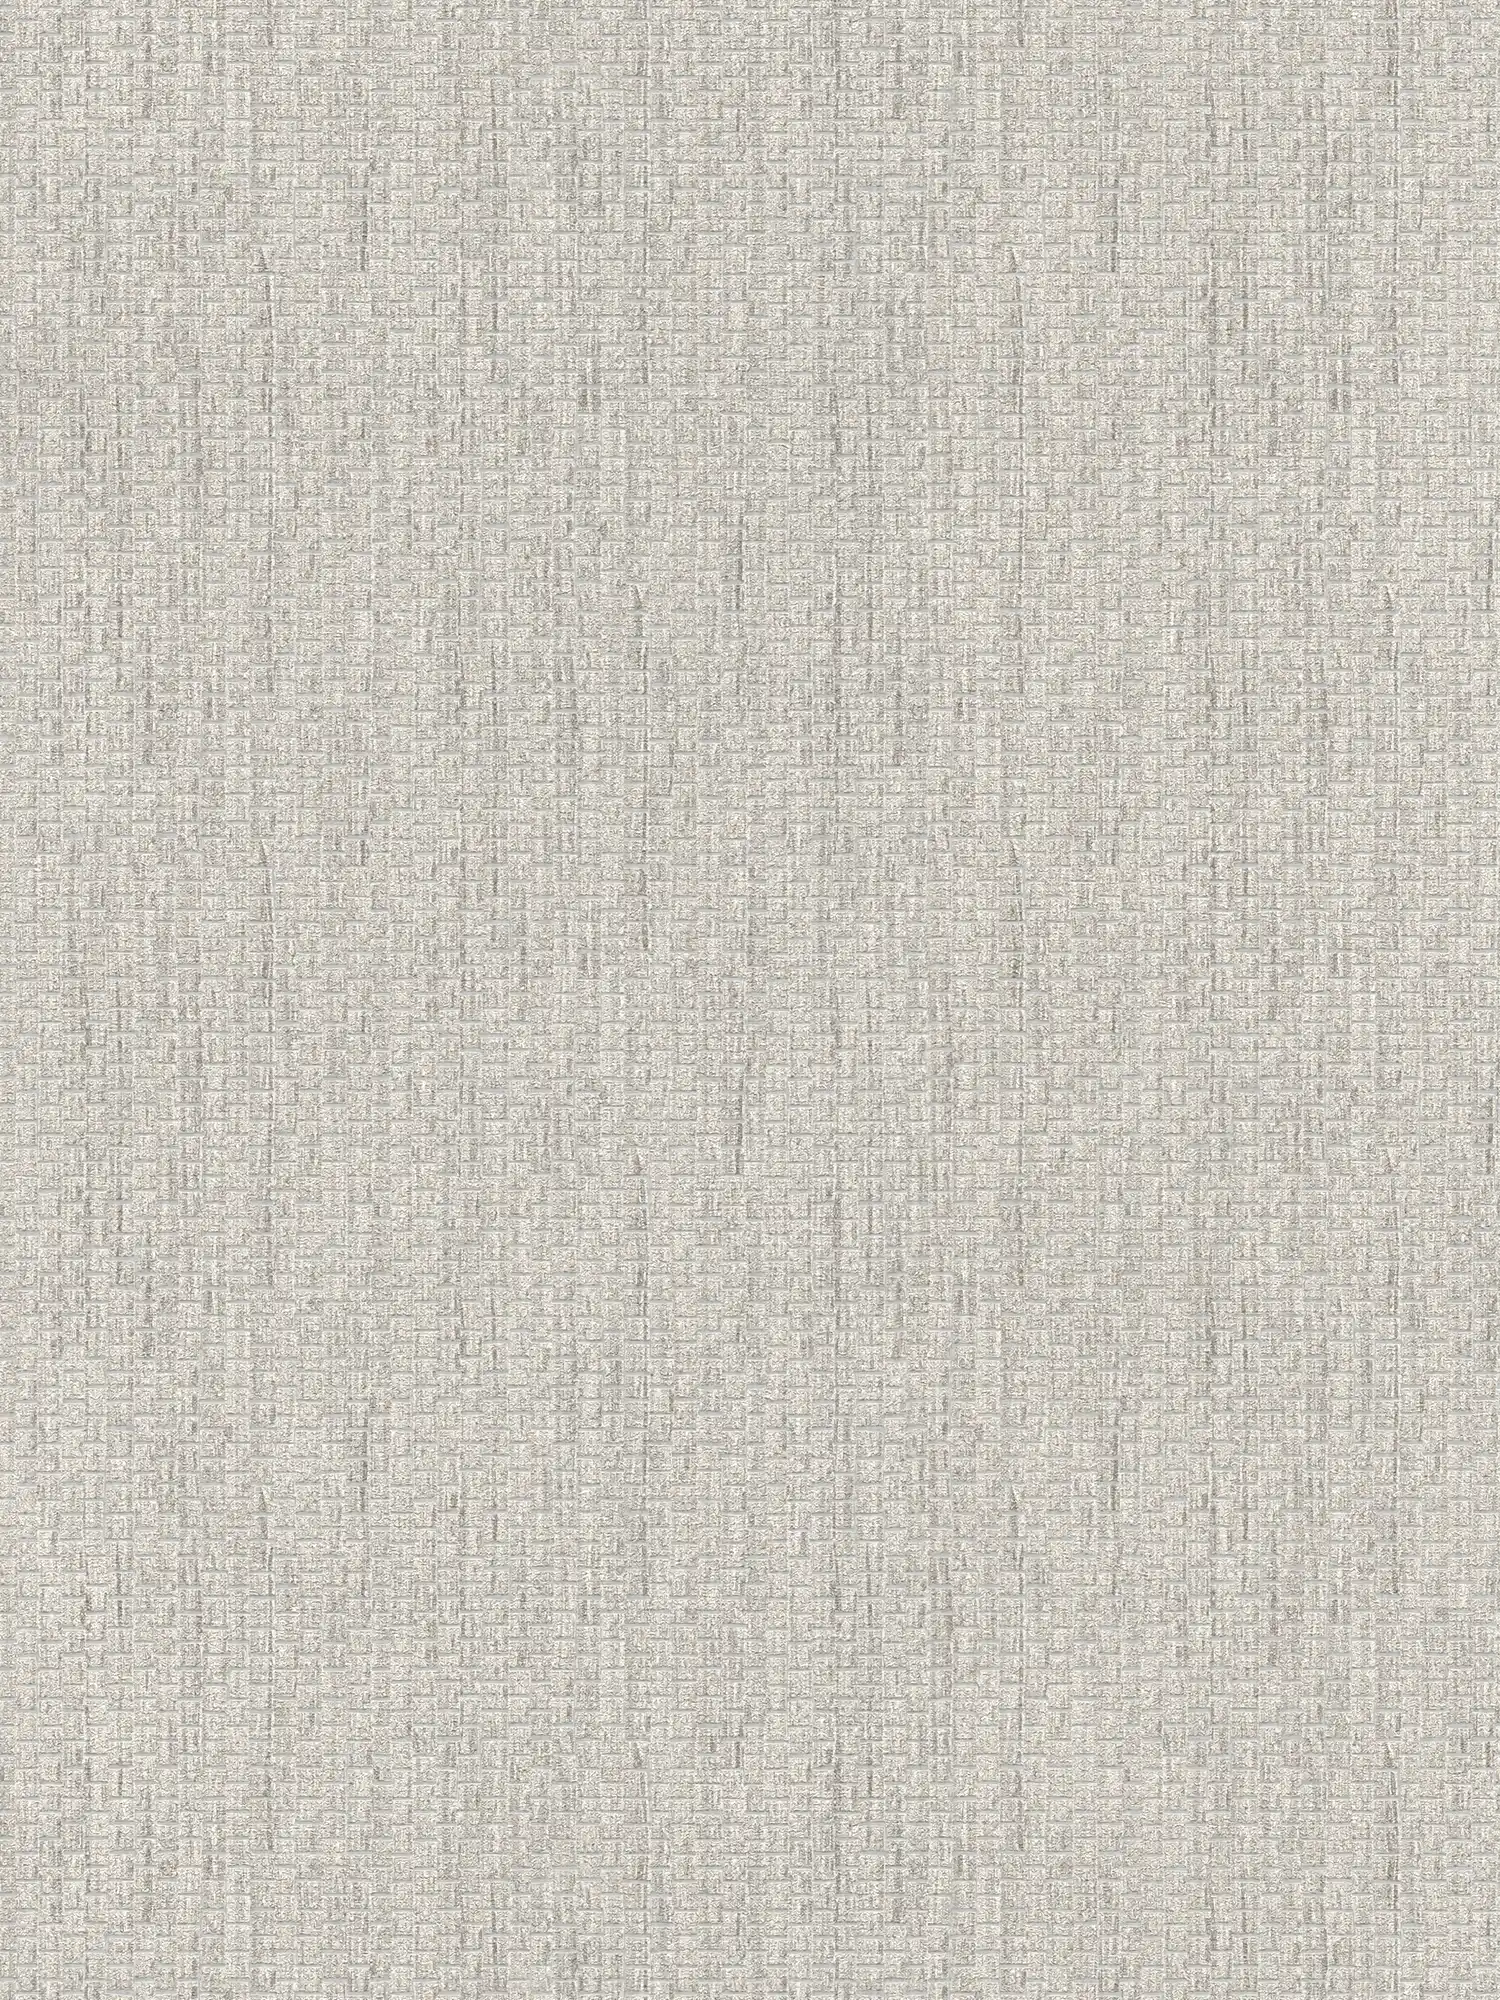 Behang met raffia natuurlijke stof patroon - Grijs
